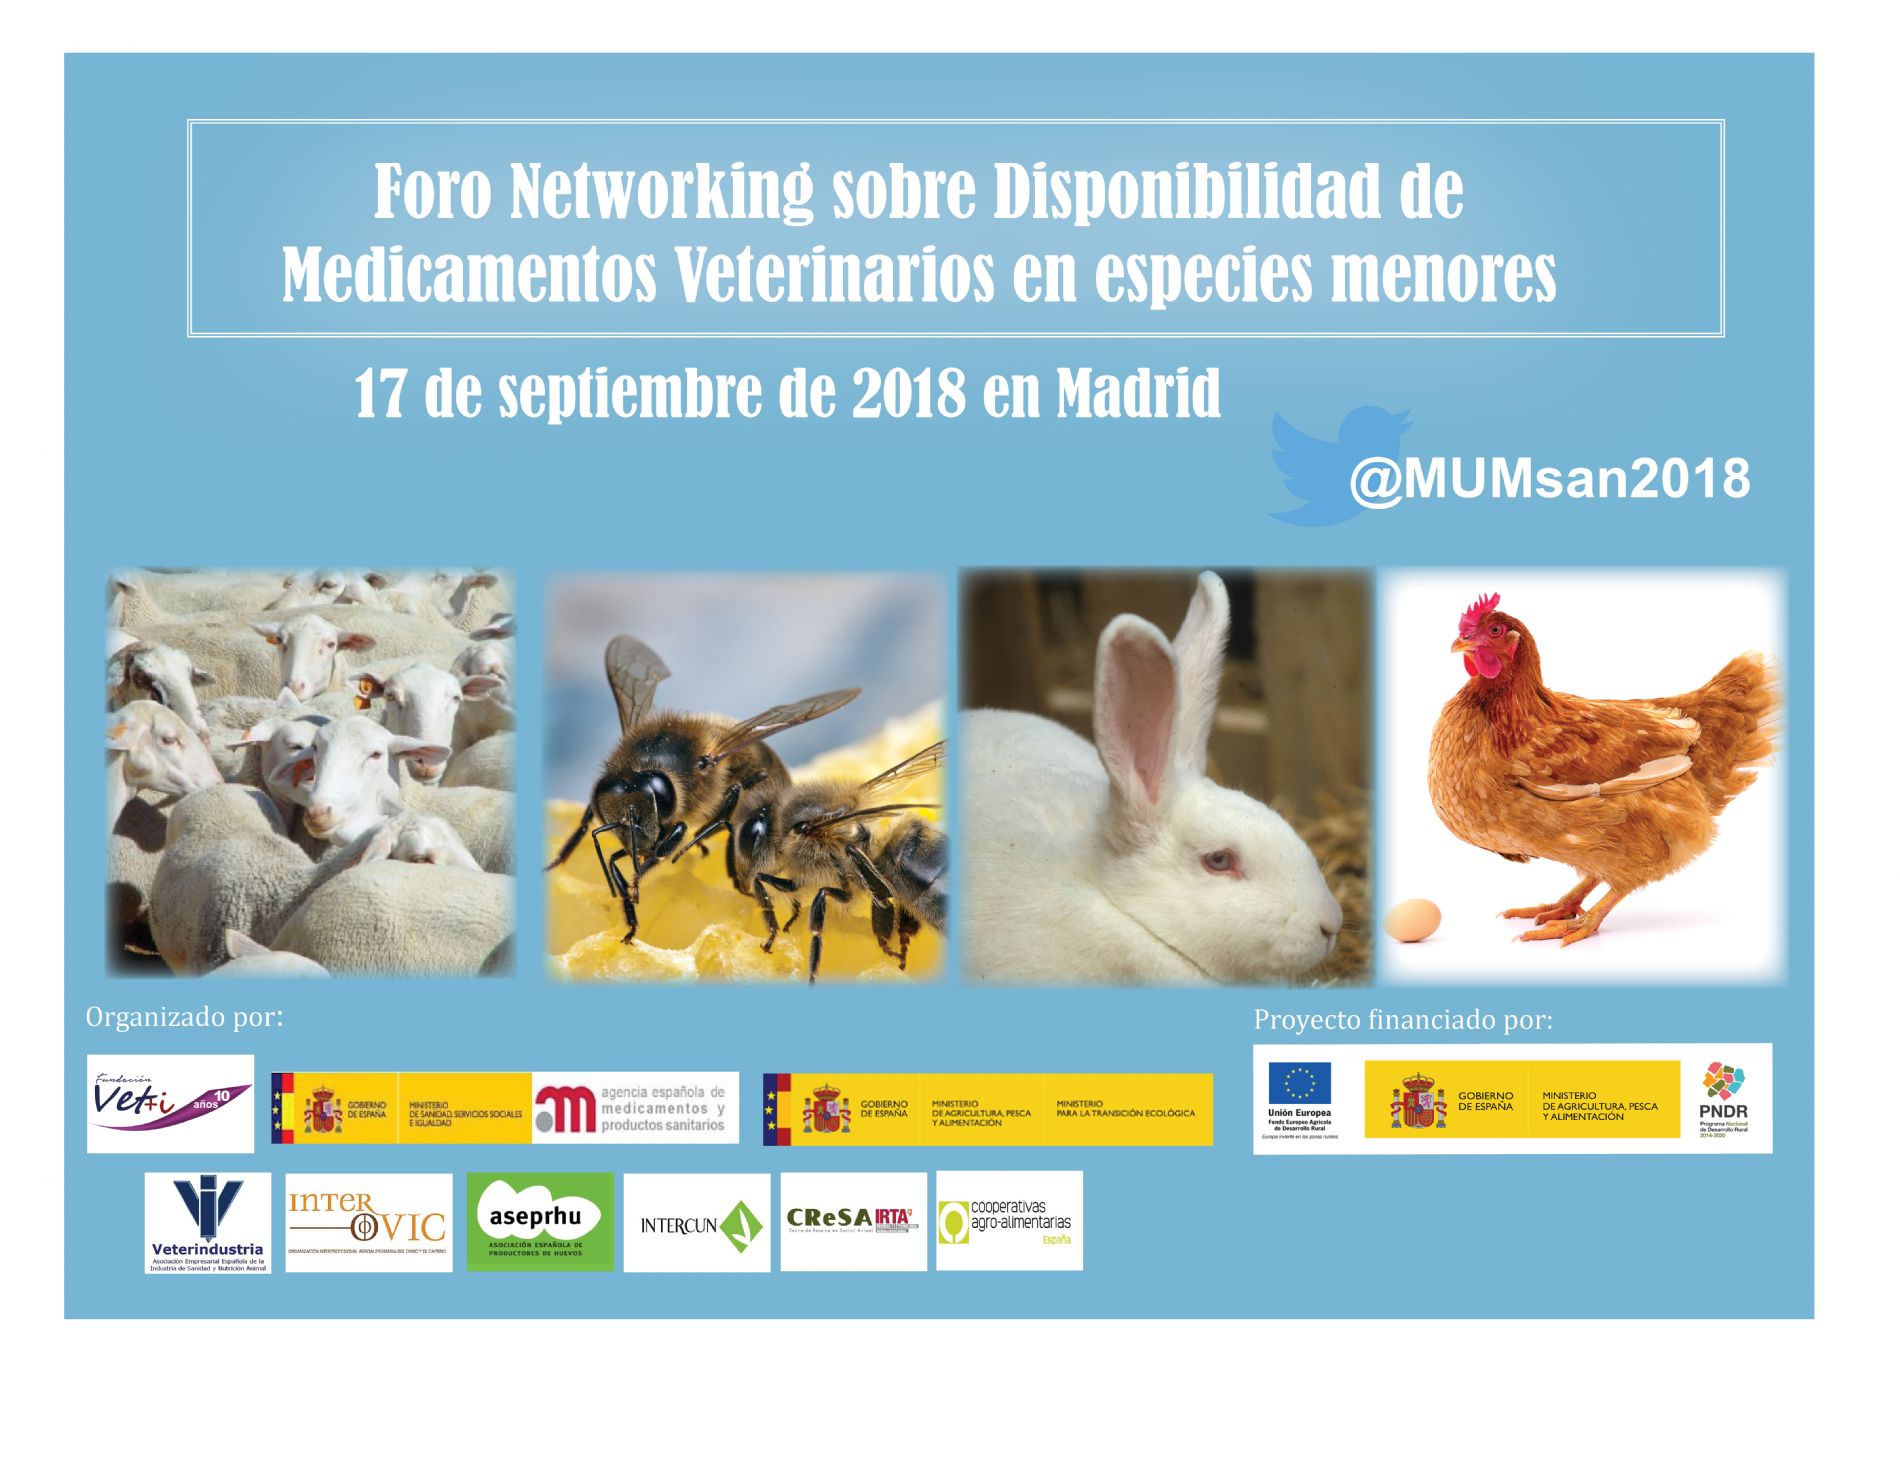 Disponibilidad de medicamentos veterinarios y productos zoosanitarios en especies menoress